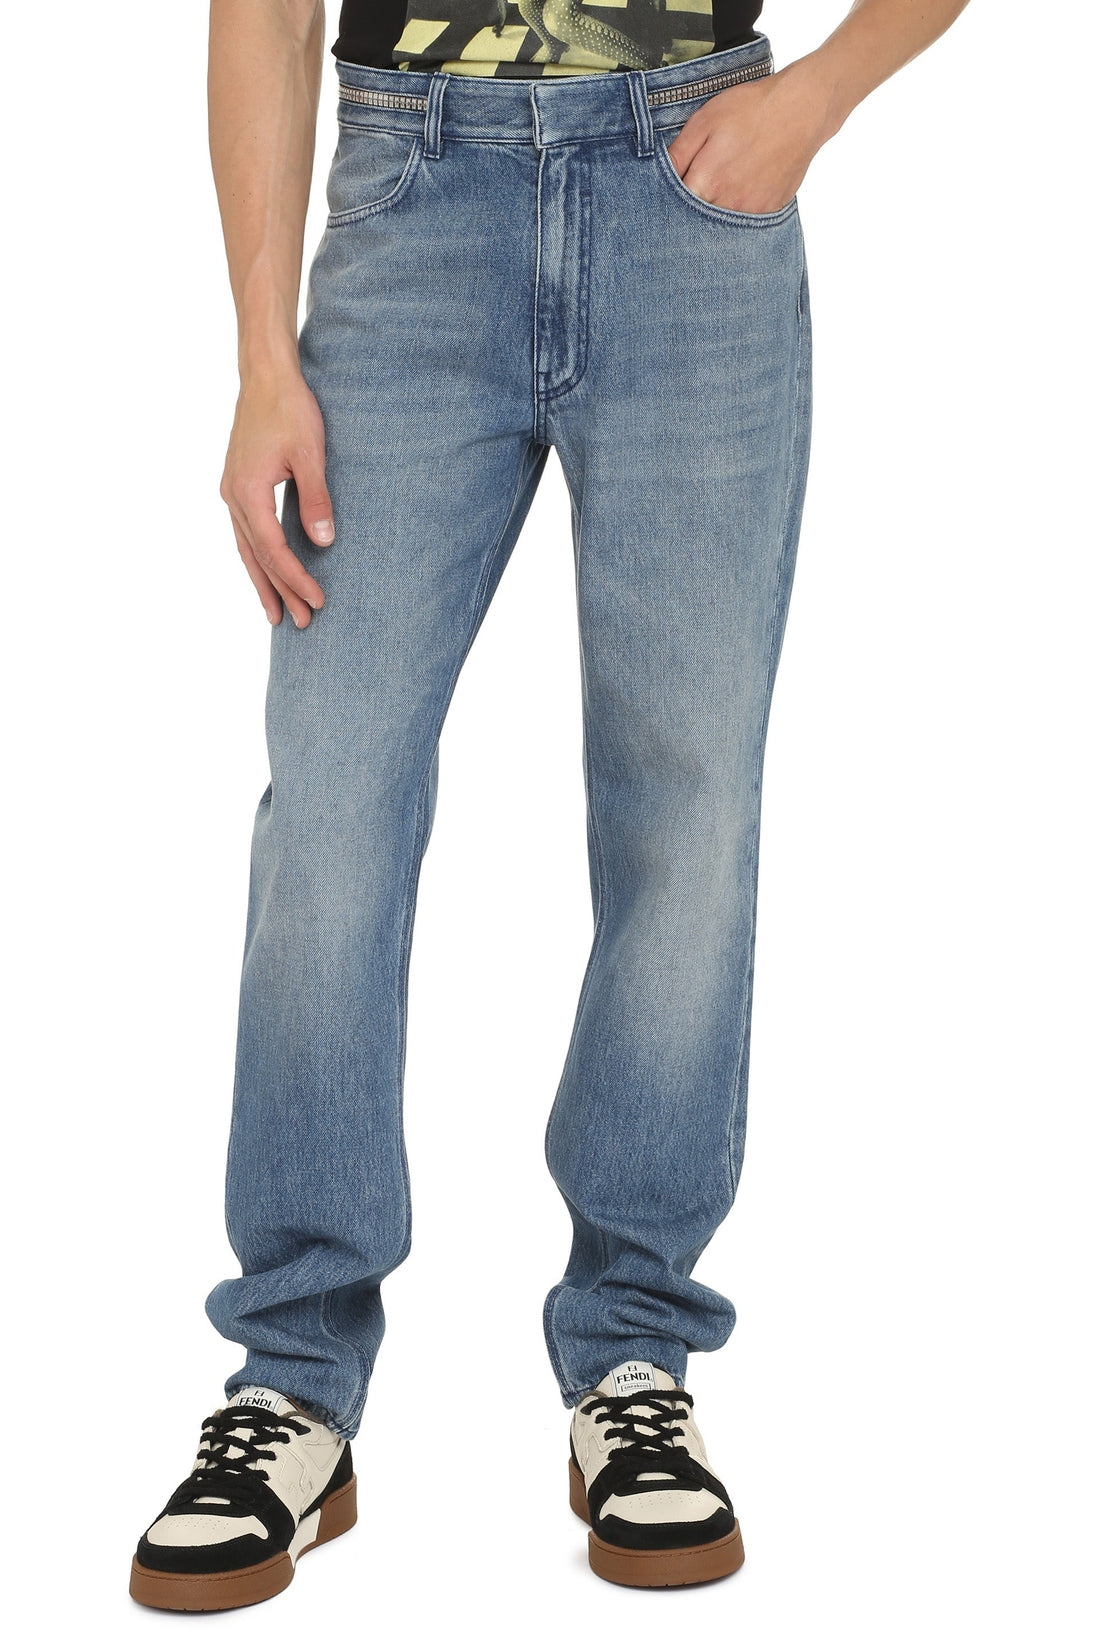 Givenchy-OUTLET-SALE-Slim fit jeans-ARCHIVIST